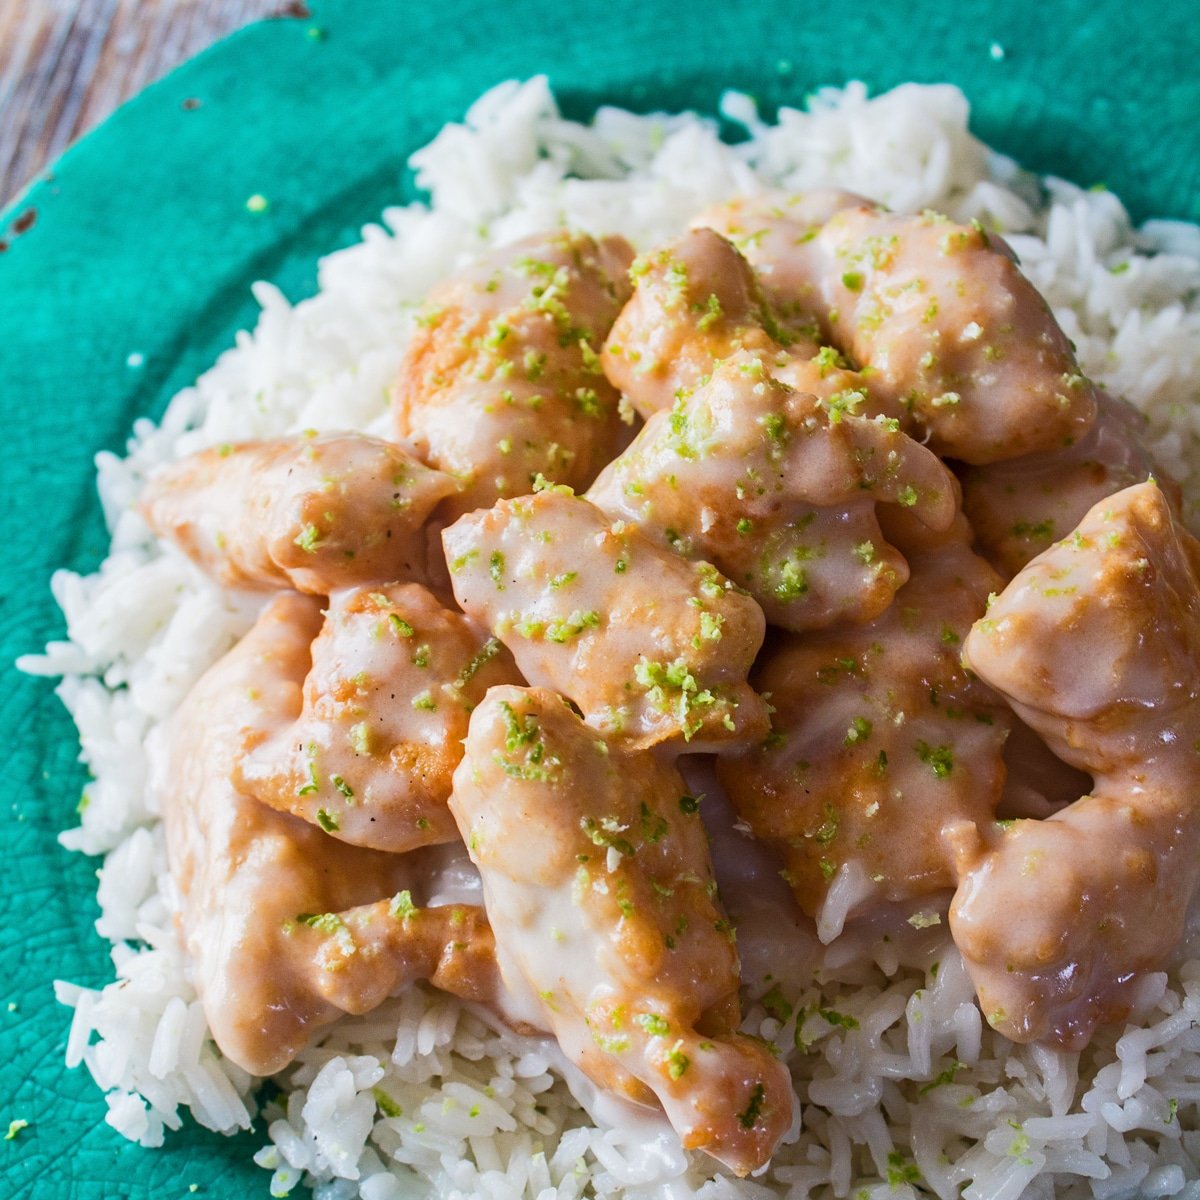 Gran ángulo de arriba cuadrado del pollo servido con arroz en un plato verde.